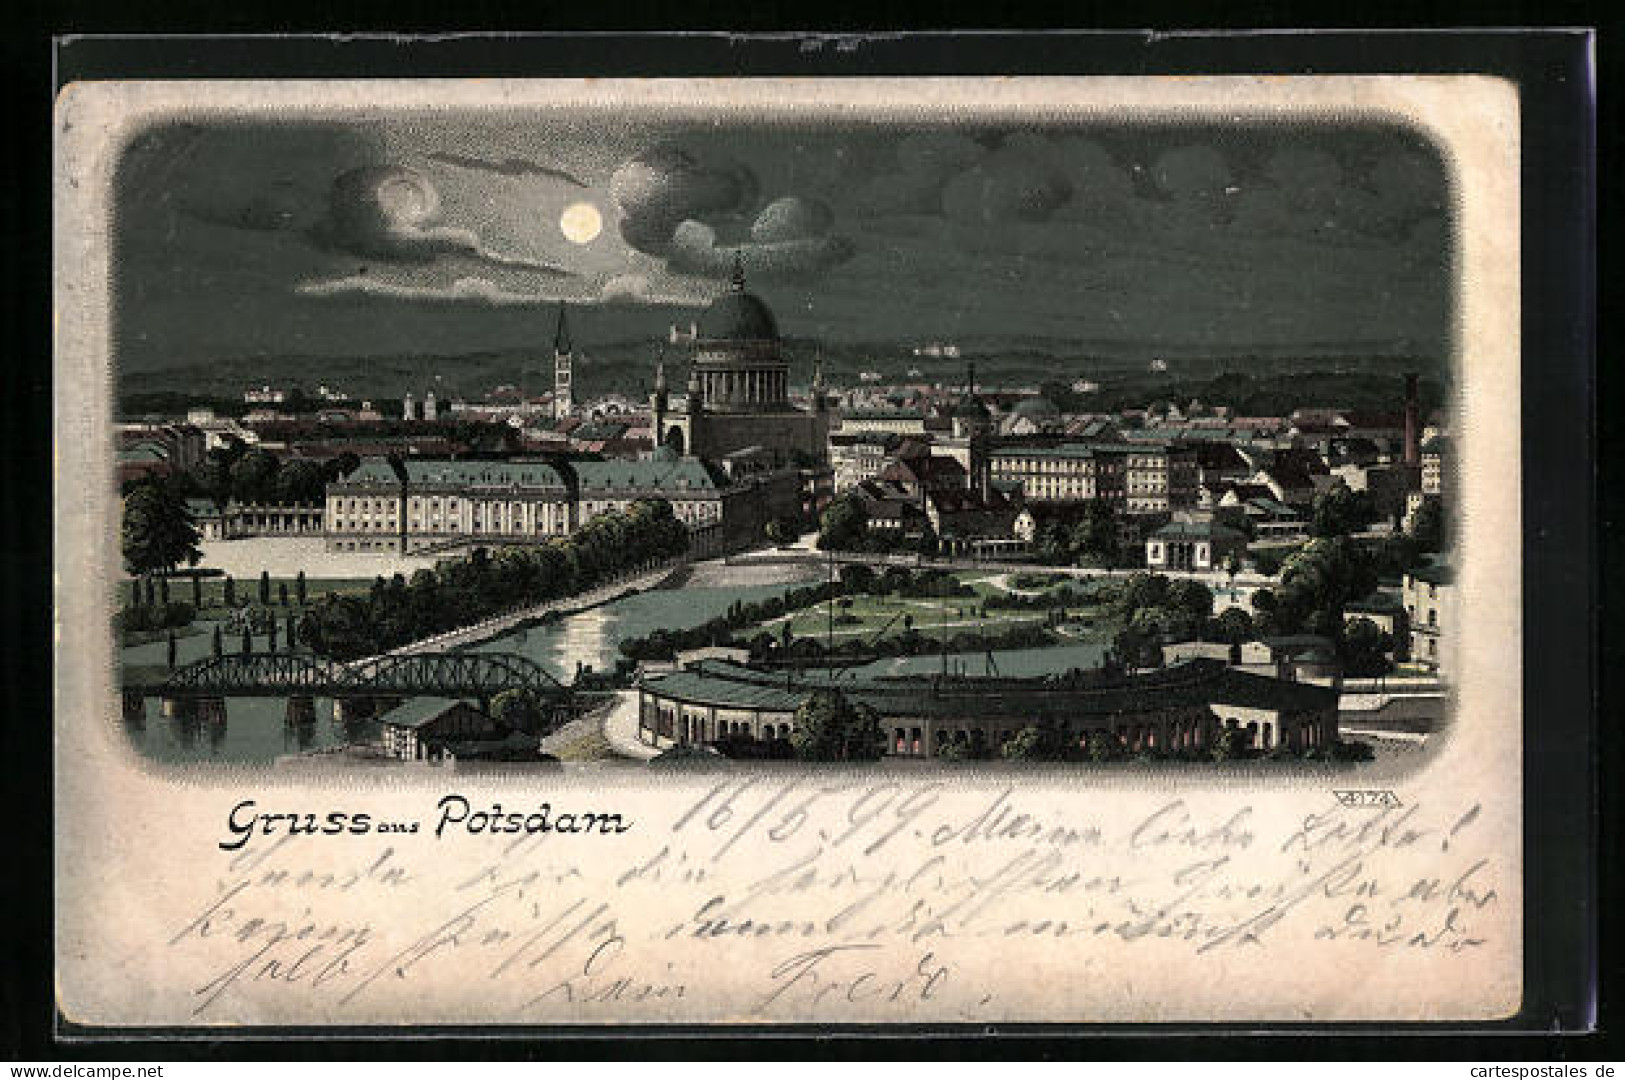 Mondschein-Lithographie Potsdam, Nächtliches Panorama  - Potsdam